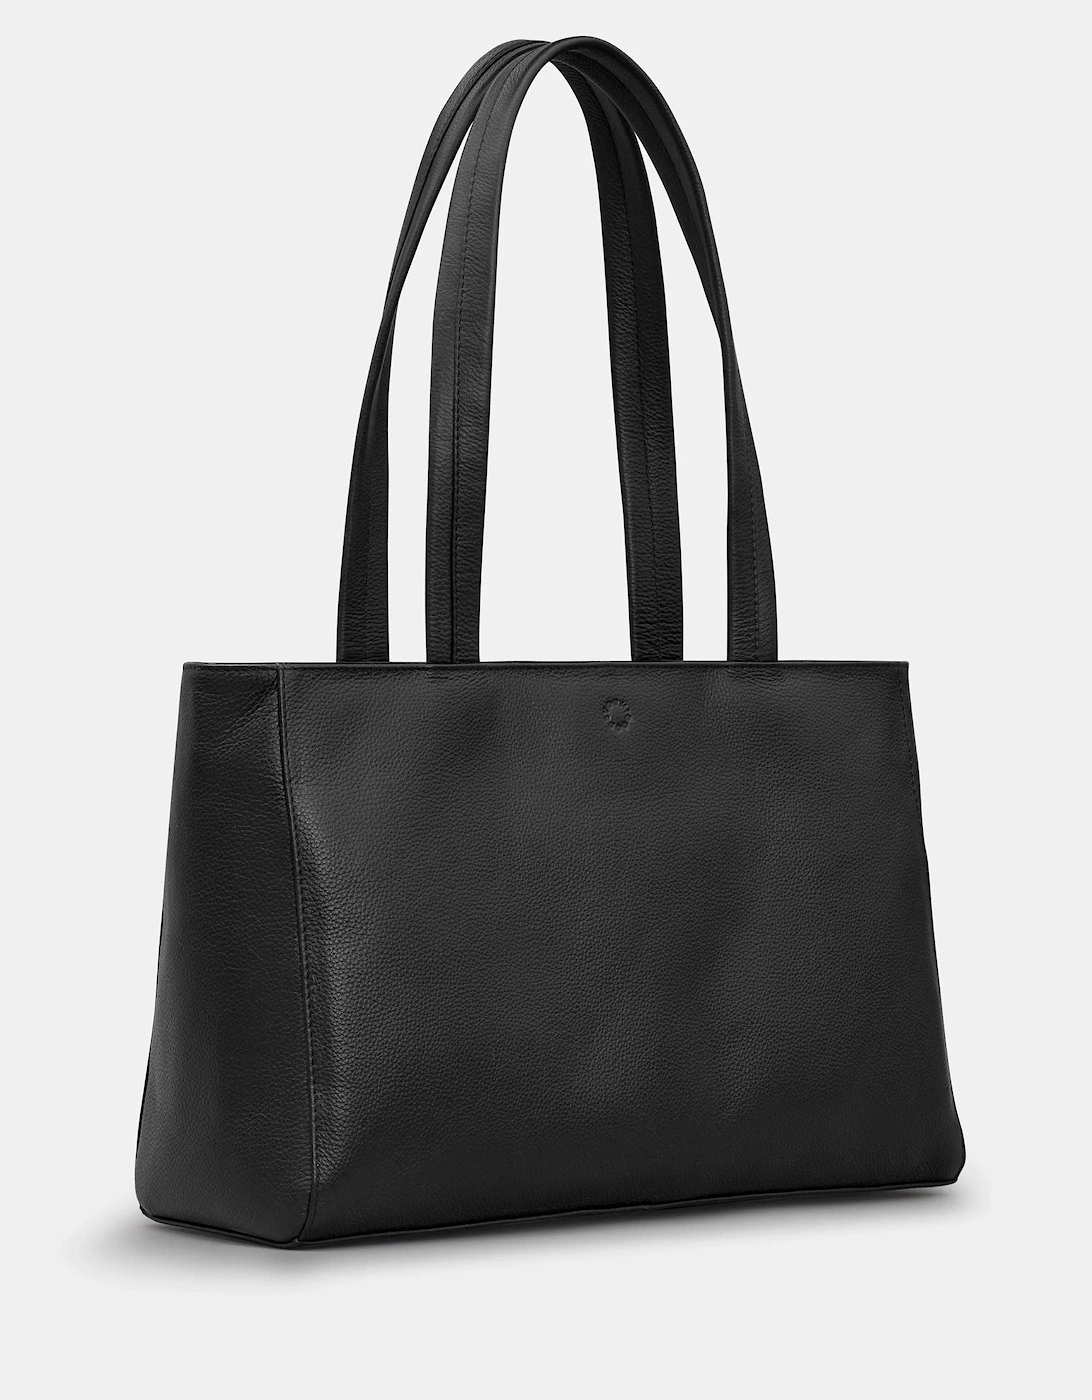 Harrington Leather Shoulder bag in black, 5 of 4